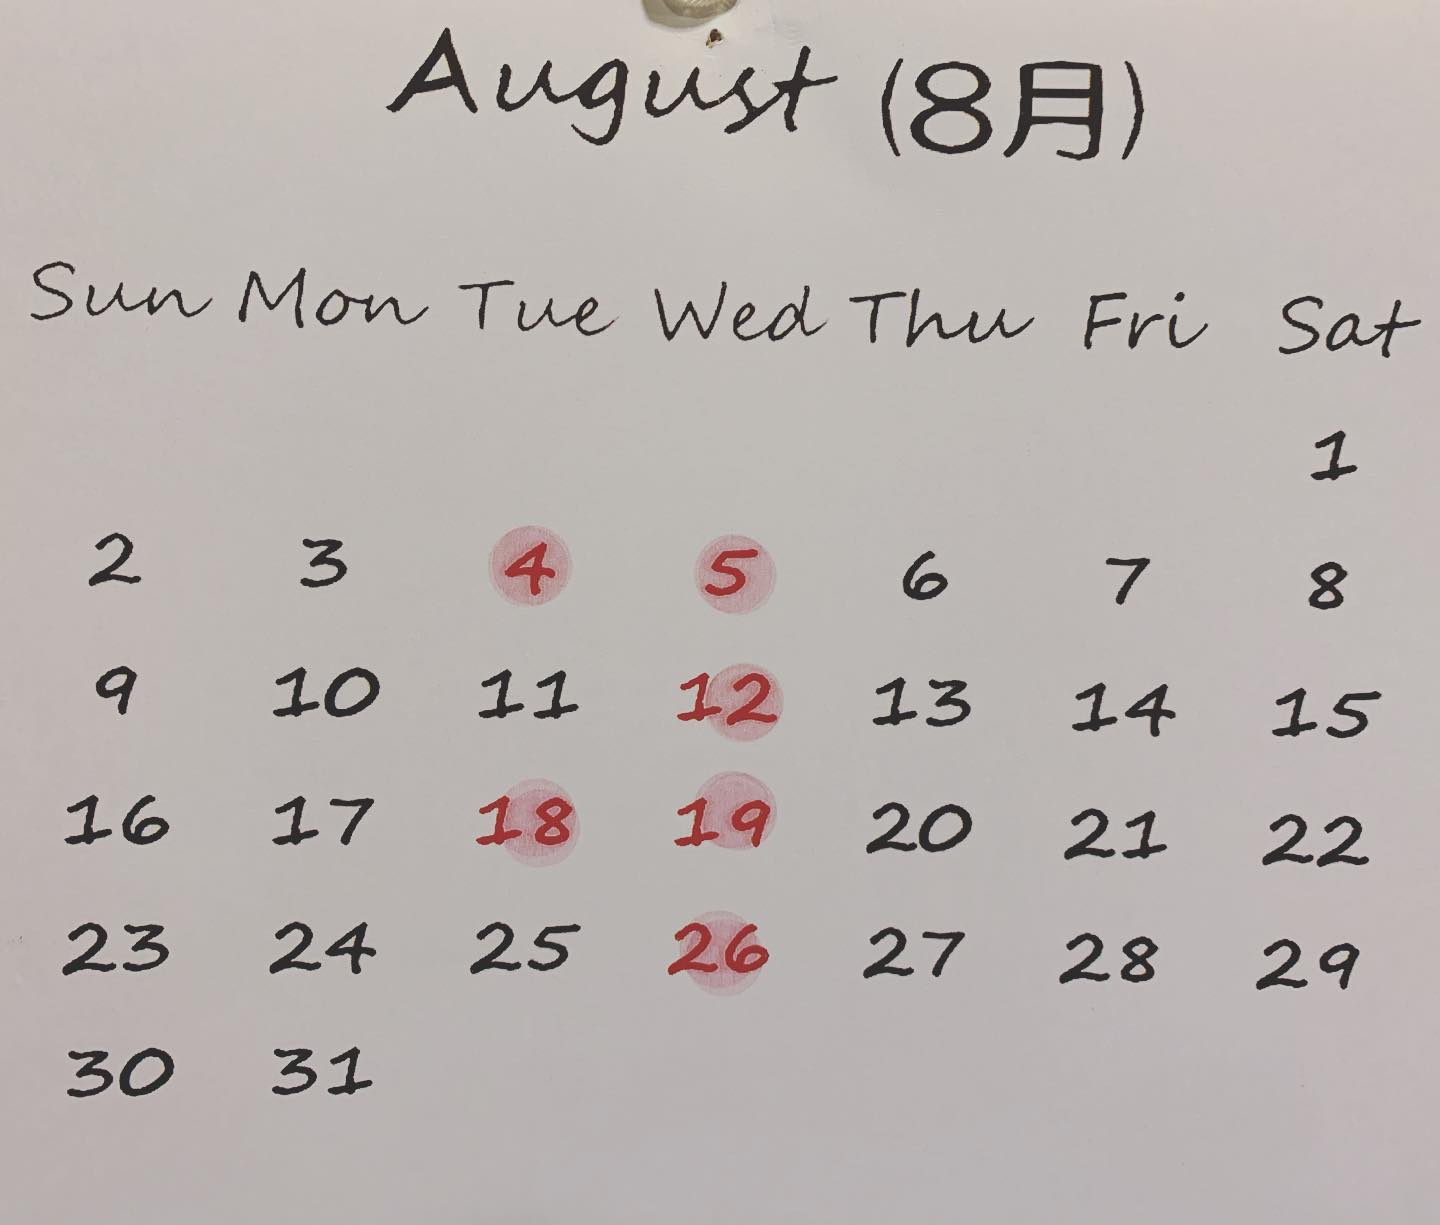 本日も沢山のお客様にご来店頂き誠にありがとうございました️
*
もう、明日から8月ですね
これから梅雨も明け、急に暑くなると思いますが体調には、くれぐれもお気をつけくださいませ
*
8月の定休日のカレンダーとなります宜しくお願い致します
*